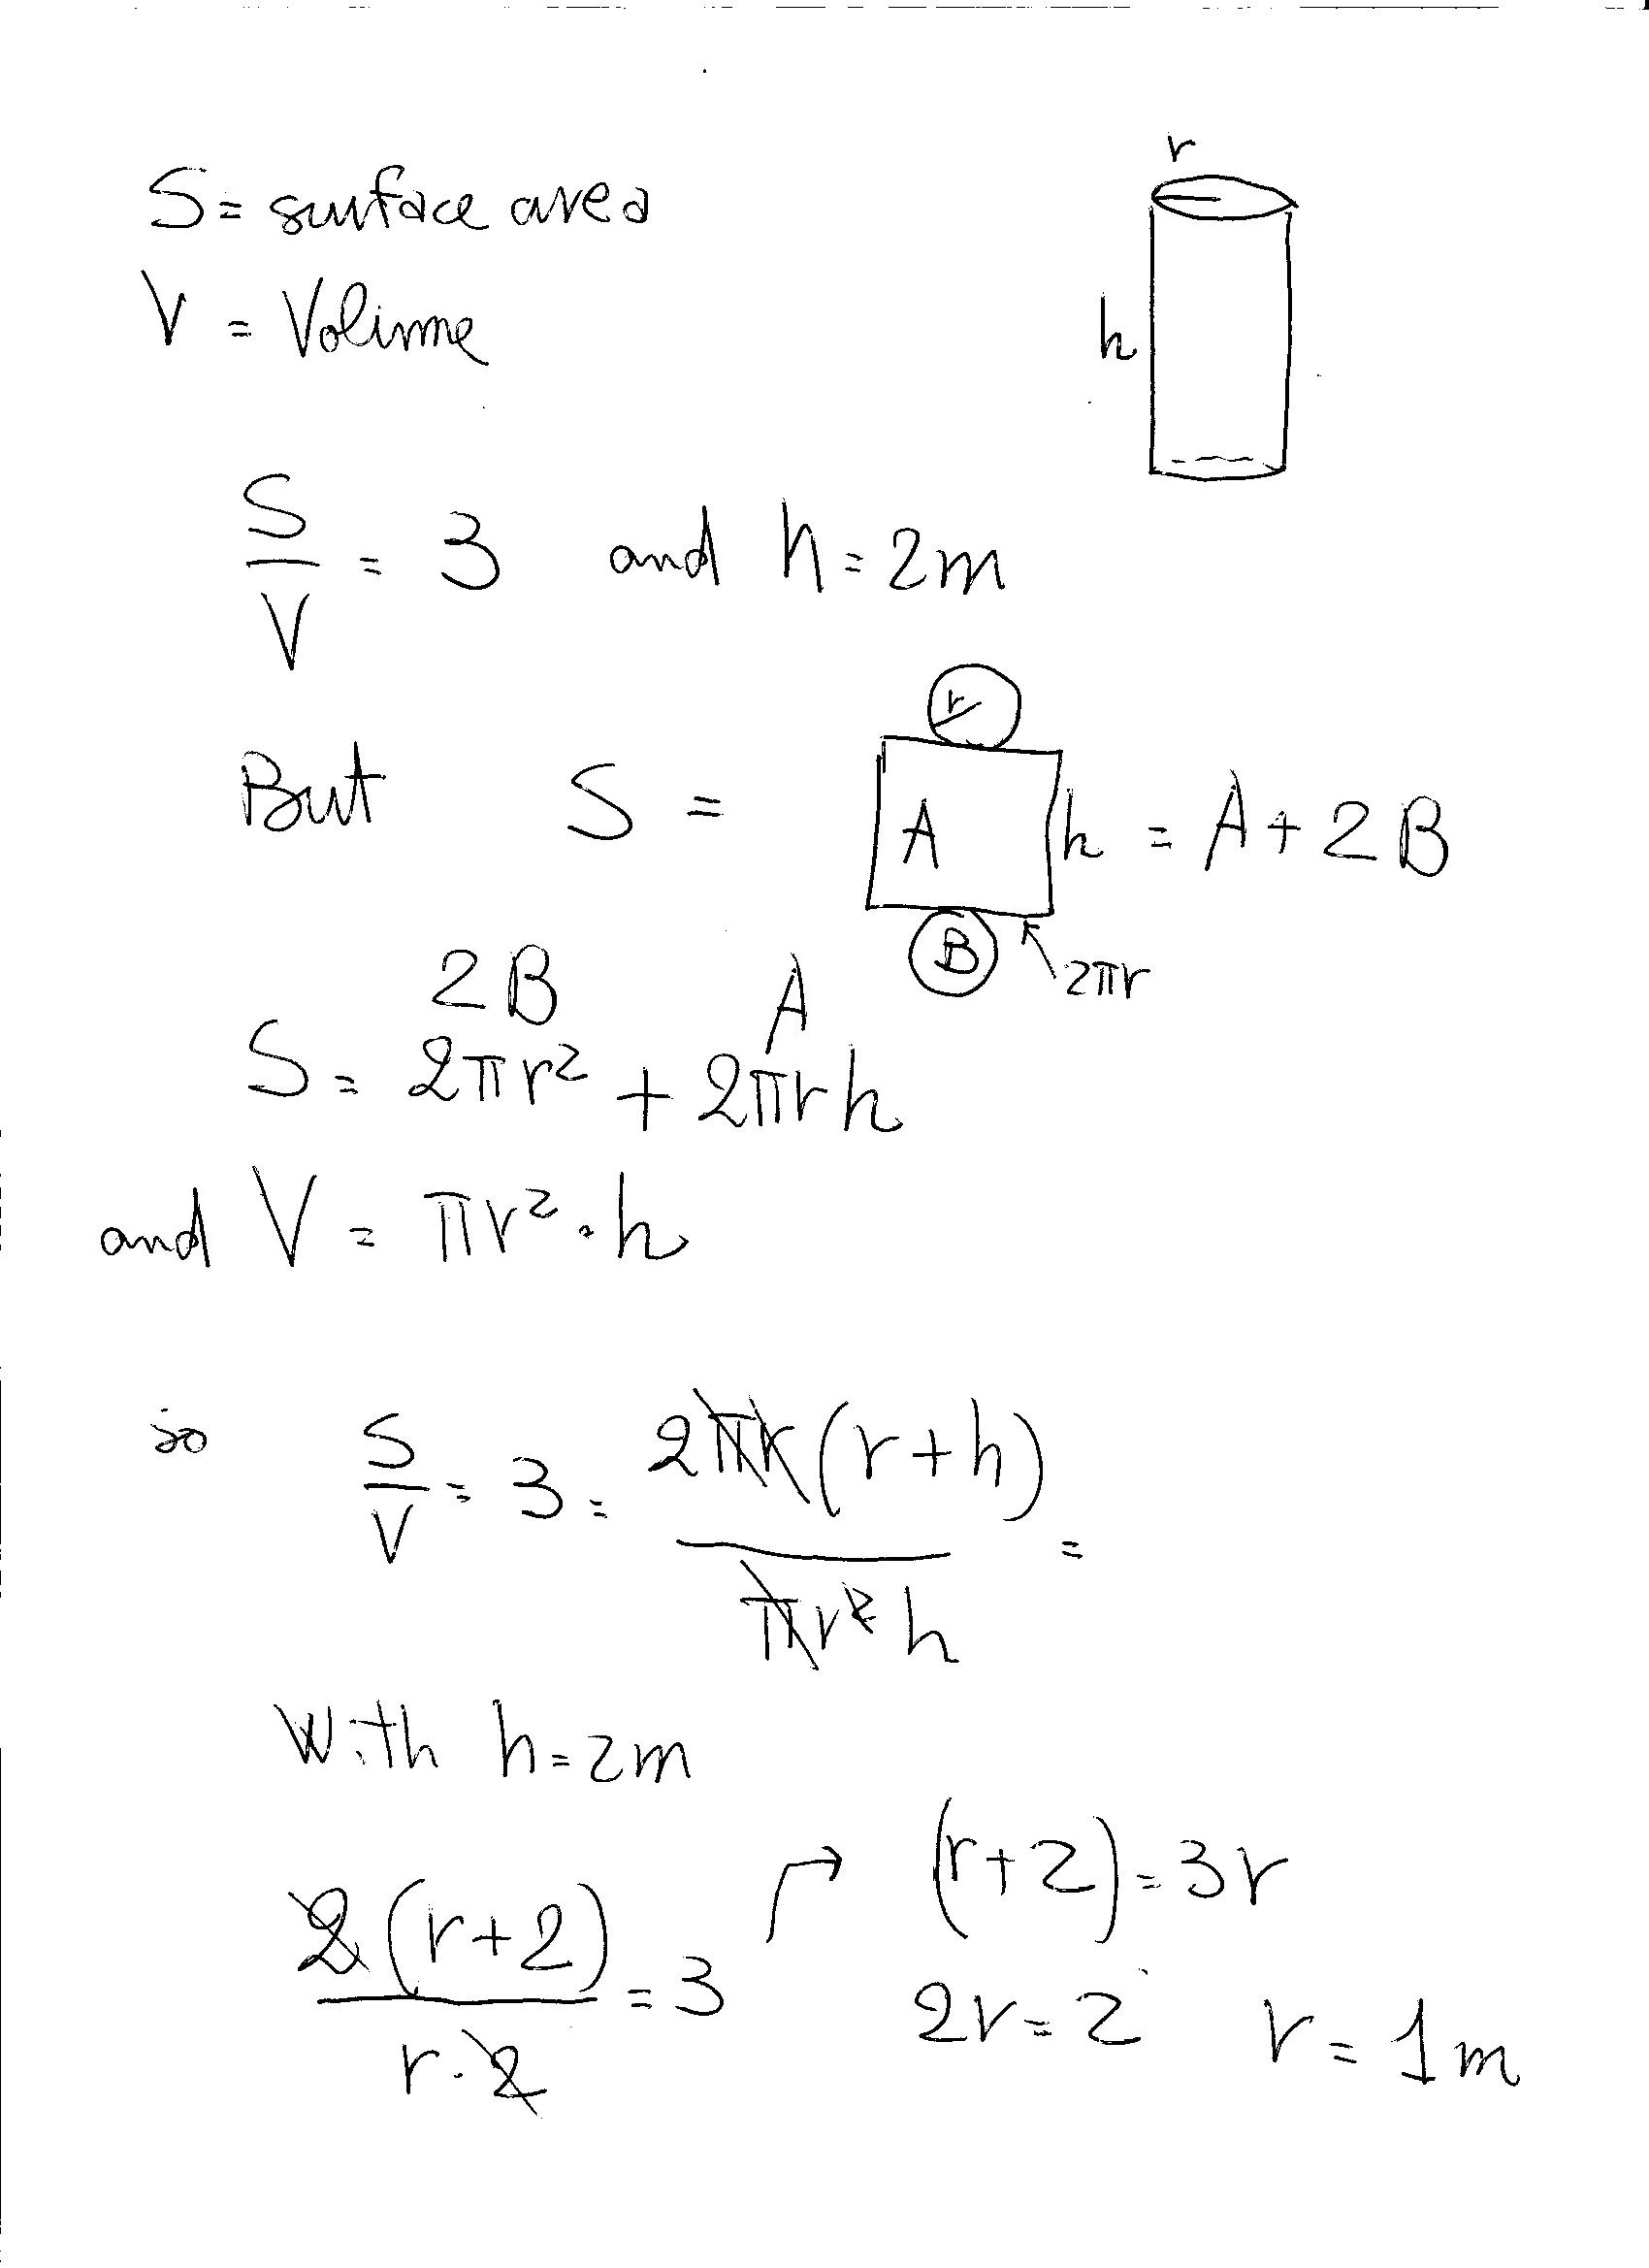 cylinder tank volume formula